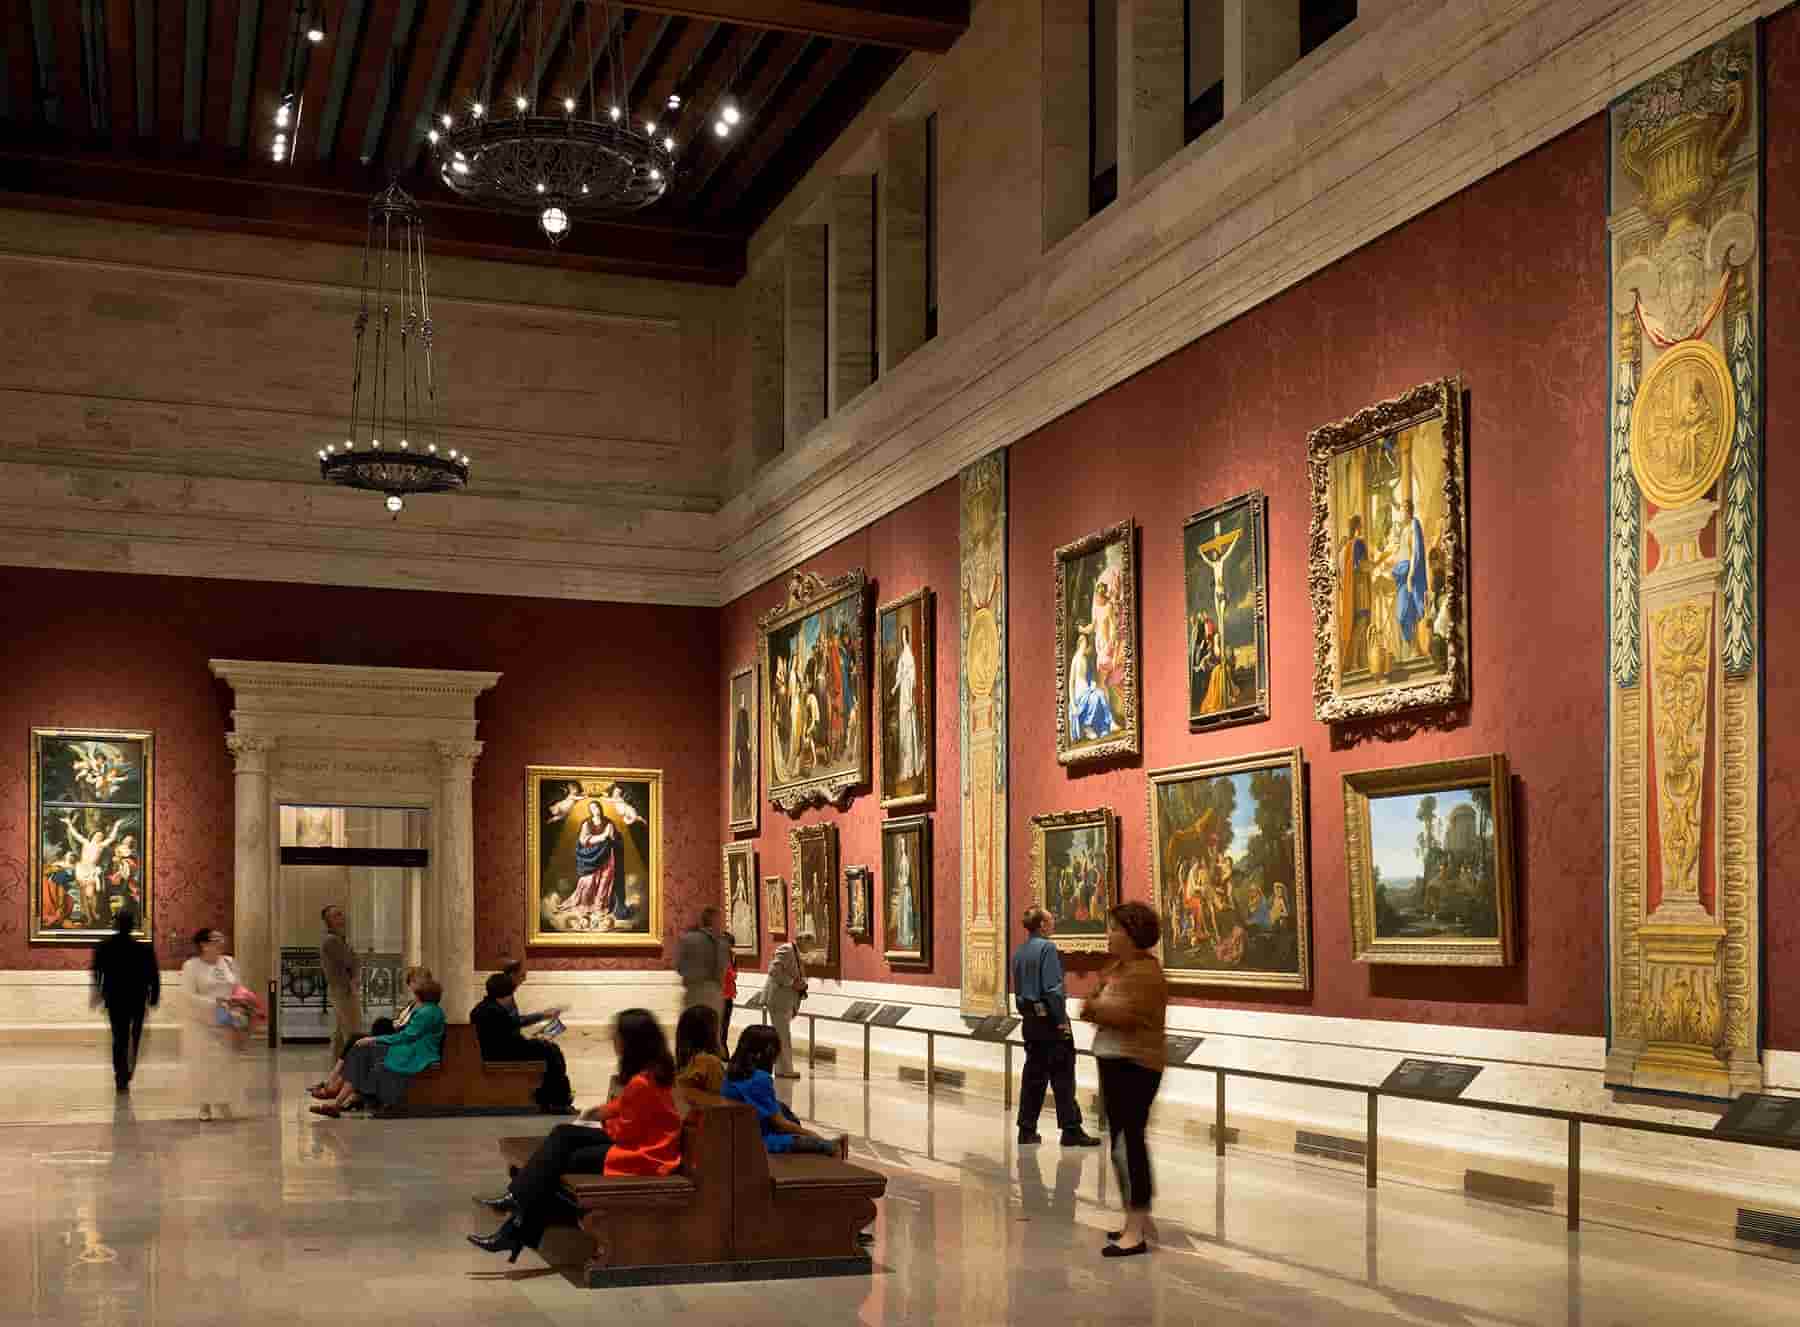 Bảo tàng Mỹ thuật Boston